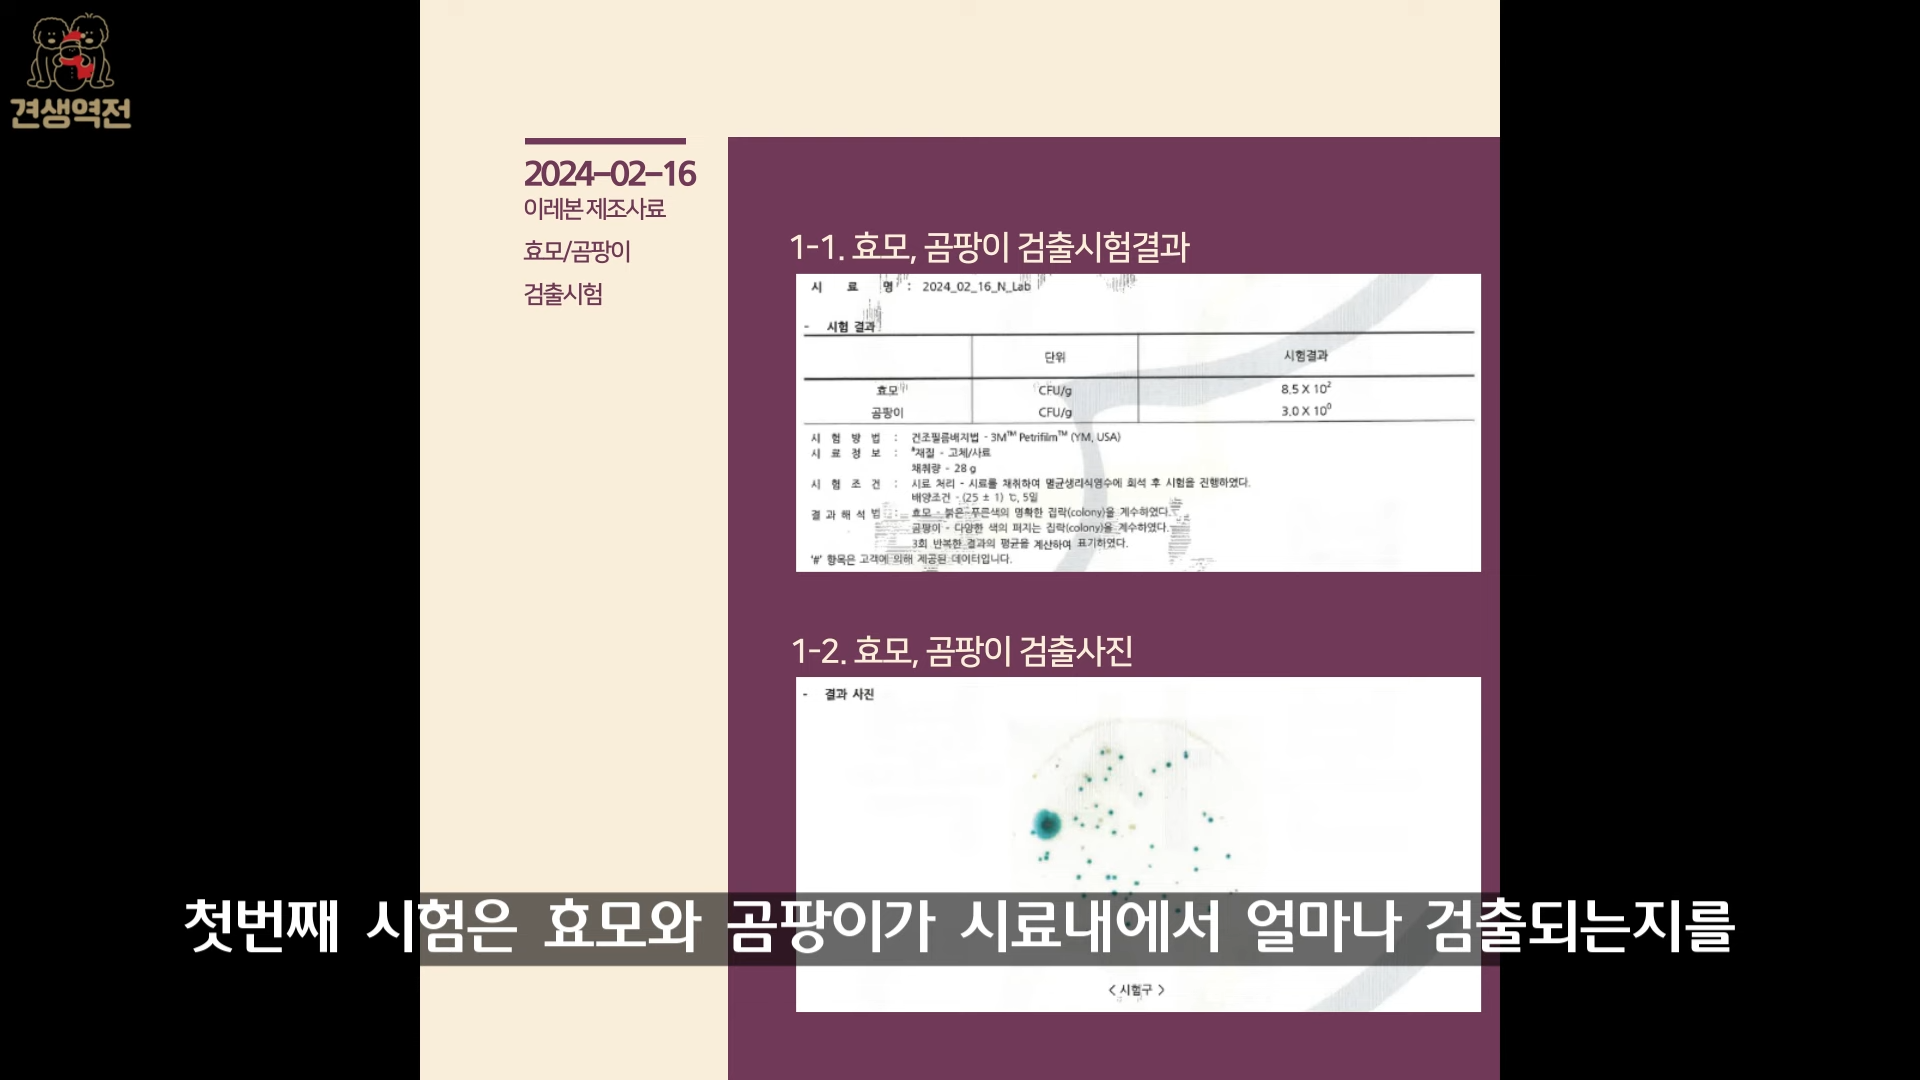 고양이 집단폐사 사건 관련 볼드모트 사료 분석결과 보고 1-21 screenshot.png